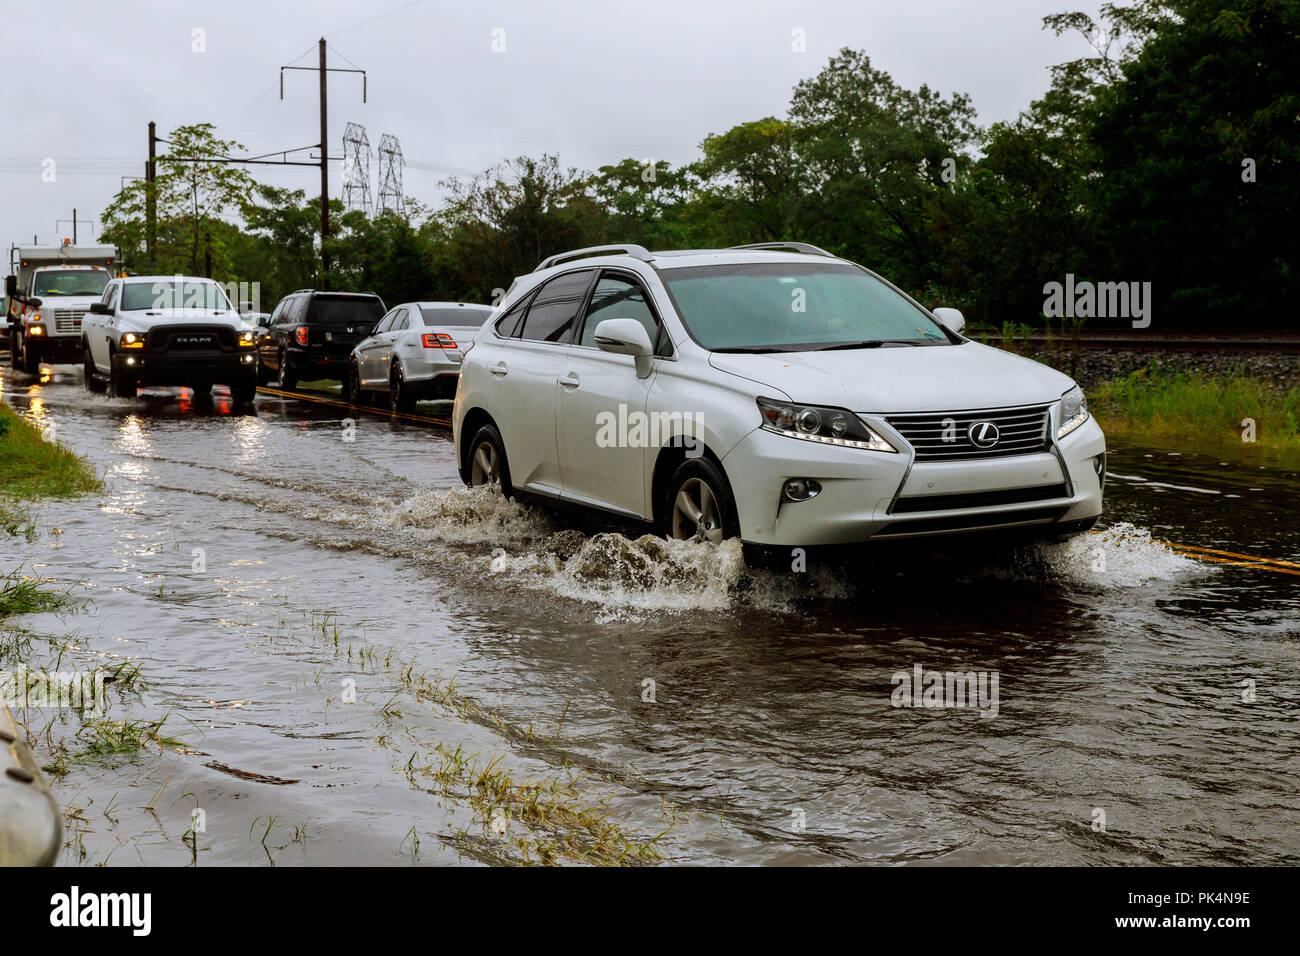 10 SEPTEMBRE 2018 NJ USA : la conduite automobile à travers l'eau d'inondation de la route pendant la saison de mousson Banque D'Images